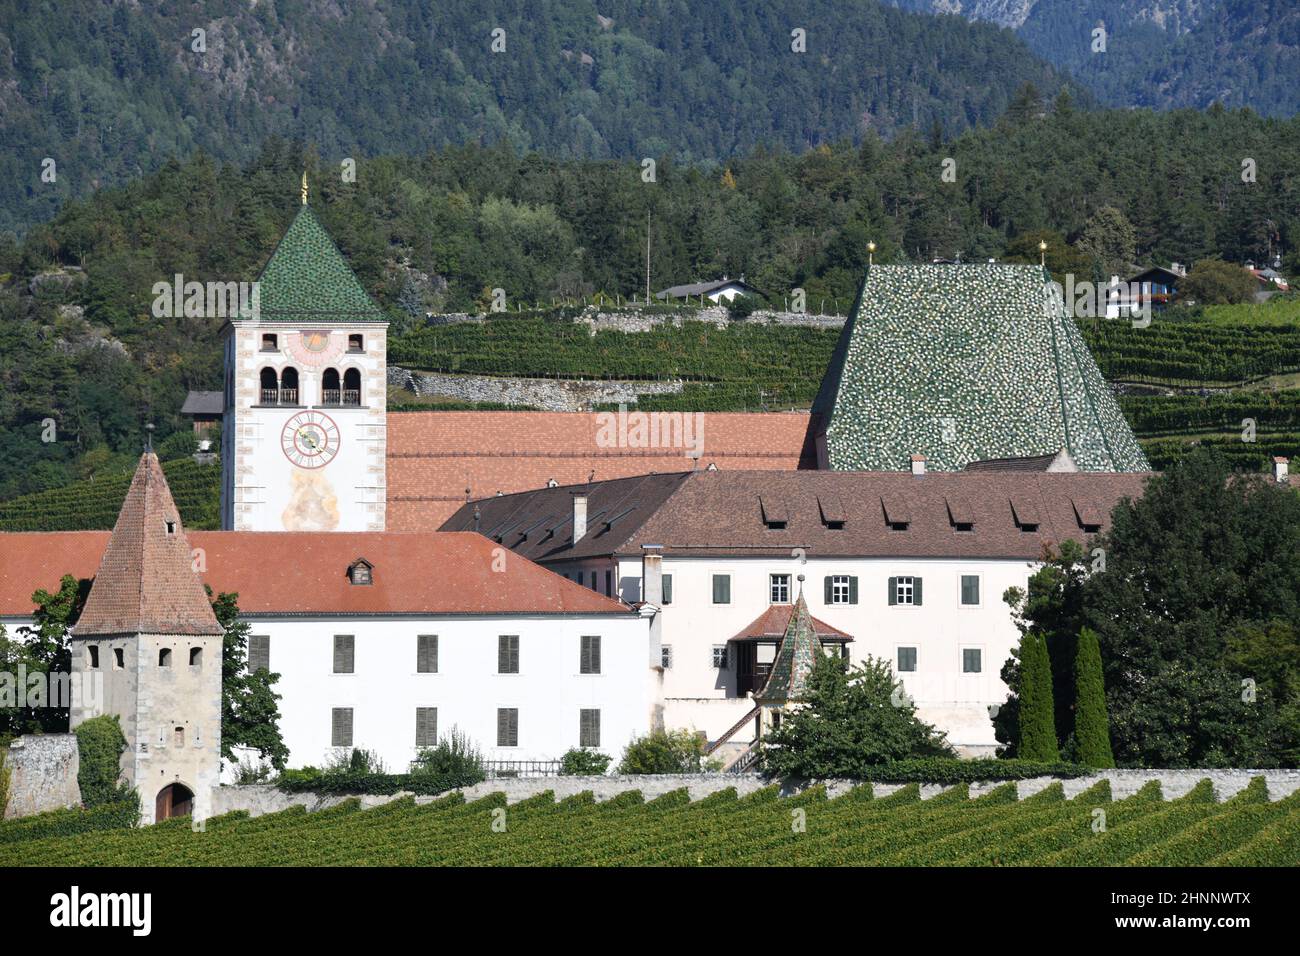 La abadía de Neustift se encuentra al norte de Bressanone en la región de Trentino - Tirol del Sur, Italia. Fue construido en estilo románico en 1190. El municipio de Vahrn se encuentra en el valle de Eisack. Foto de stock